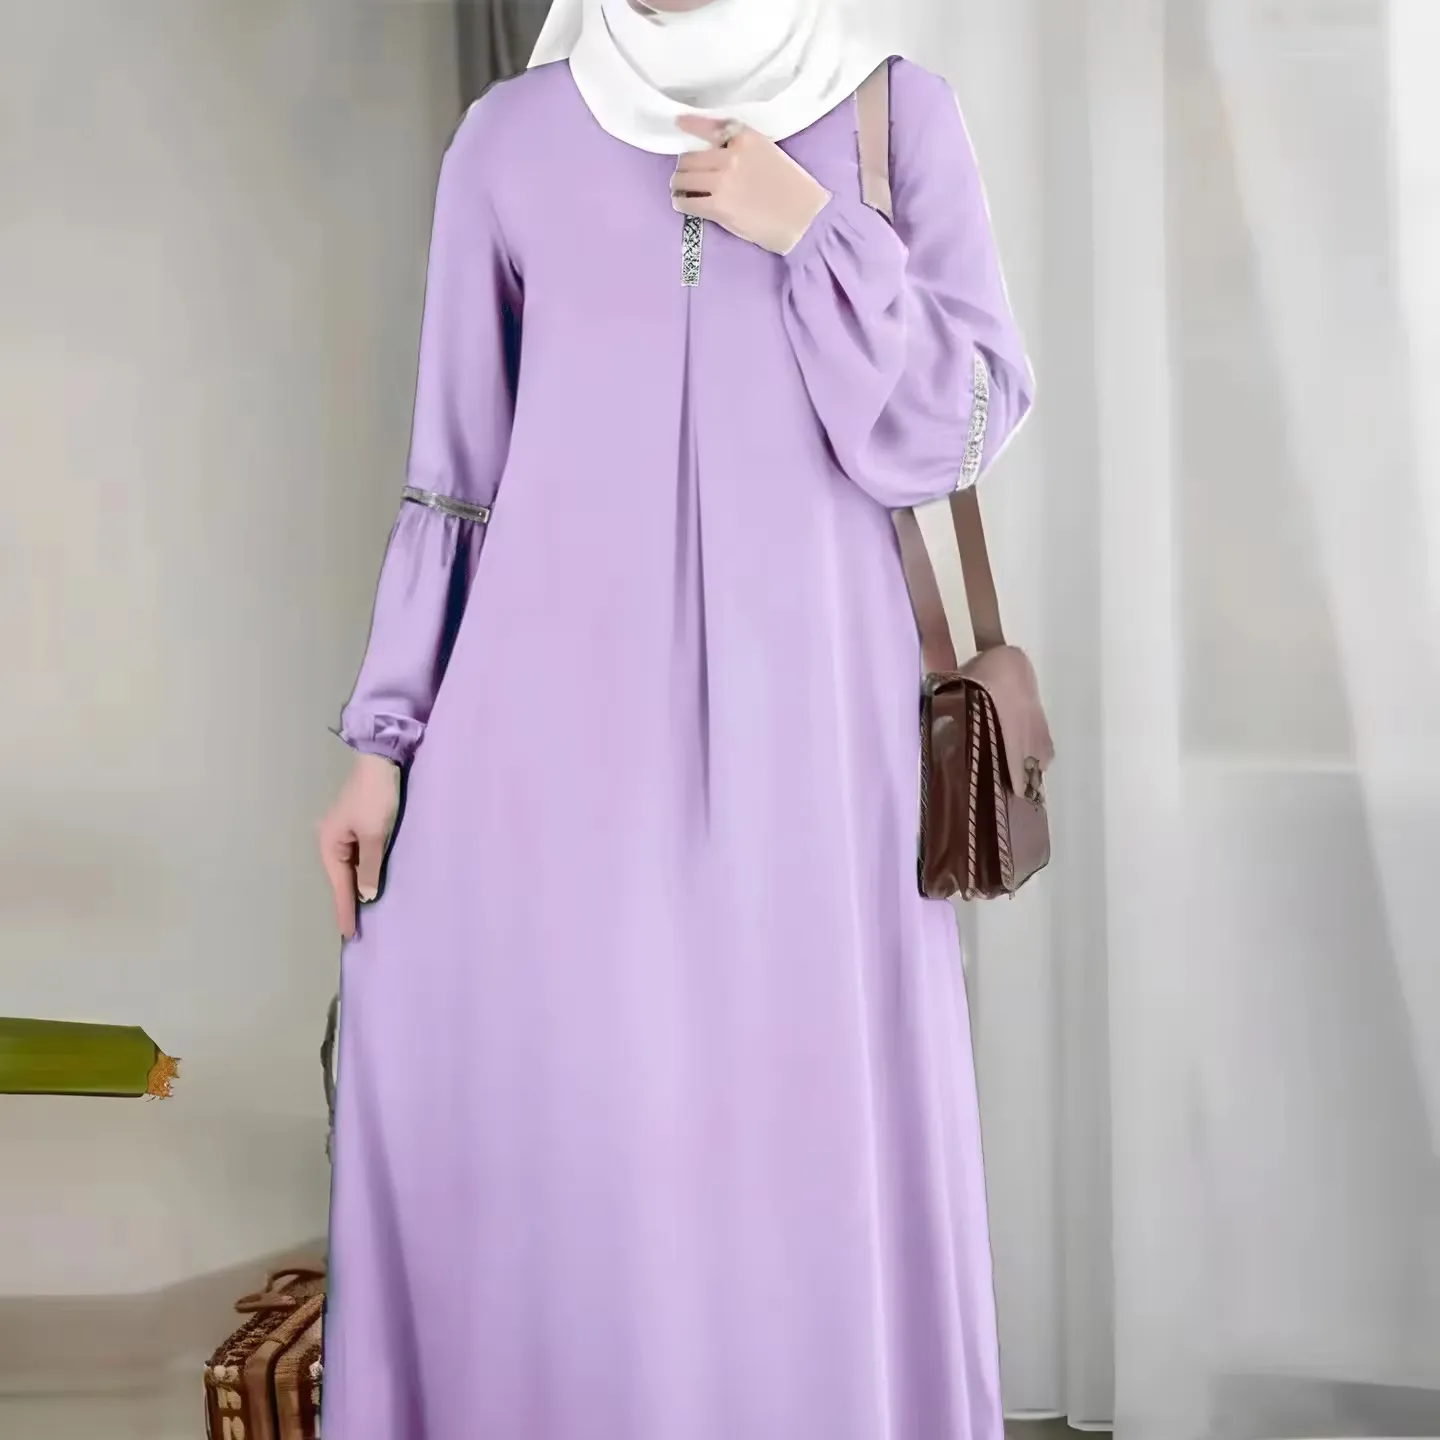 Mode muslimisch Abaya Hijab Kleid Damen lässige Pailletten Sundress solide Party Feiertag Vestido lange Ärmel islamische Kleidung